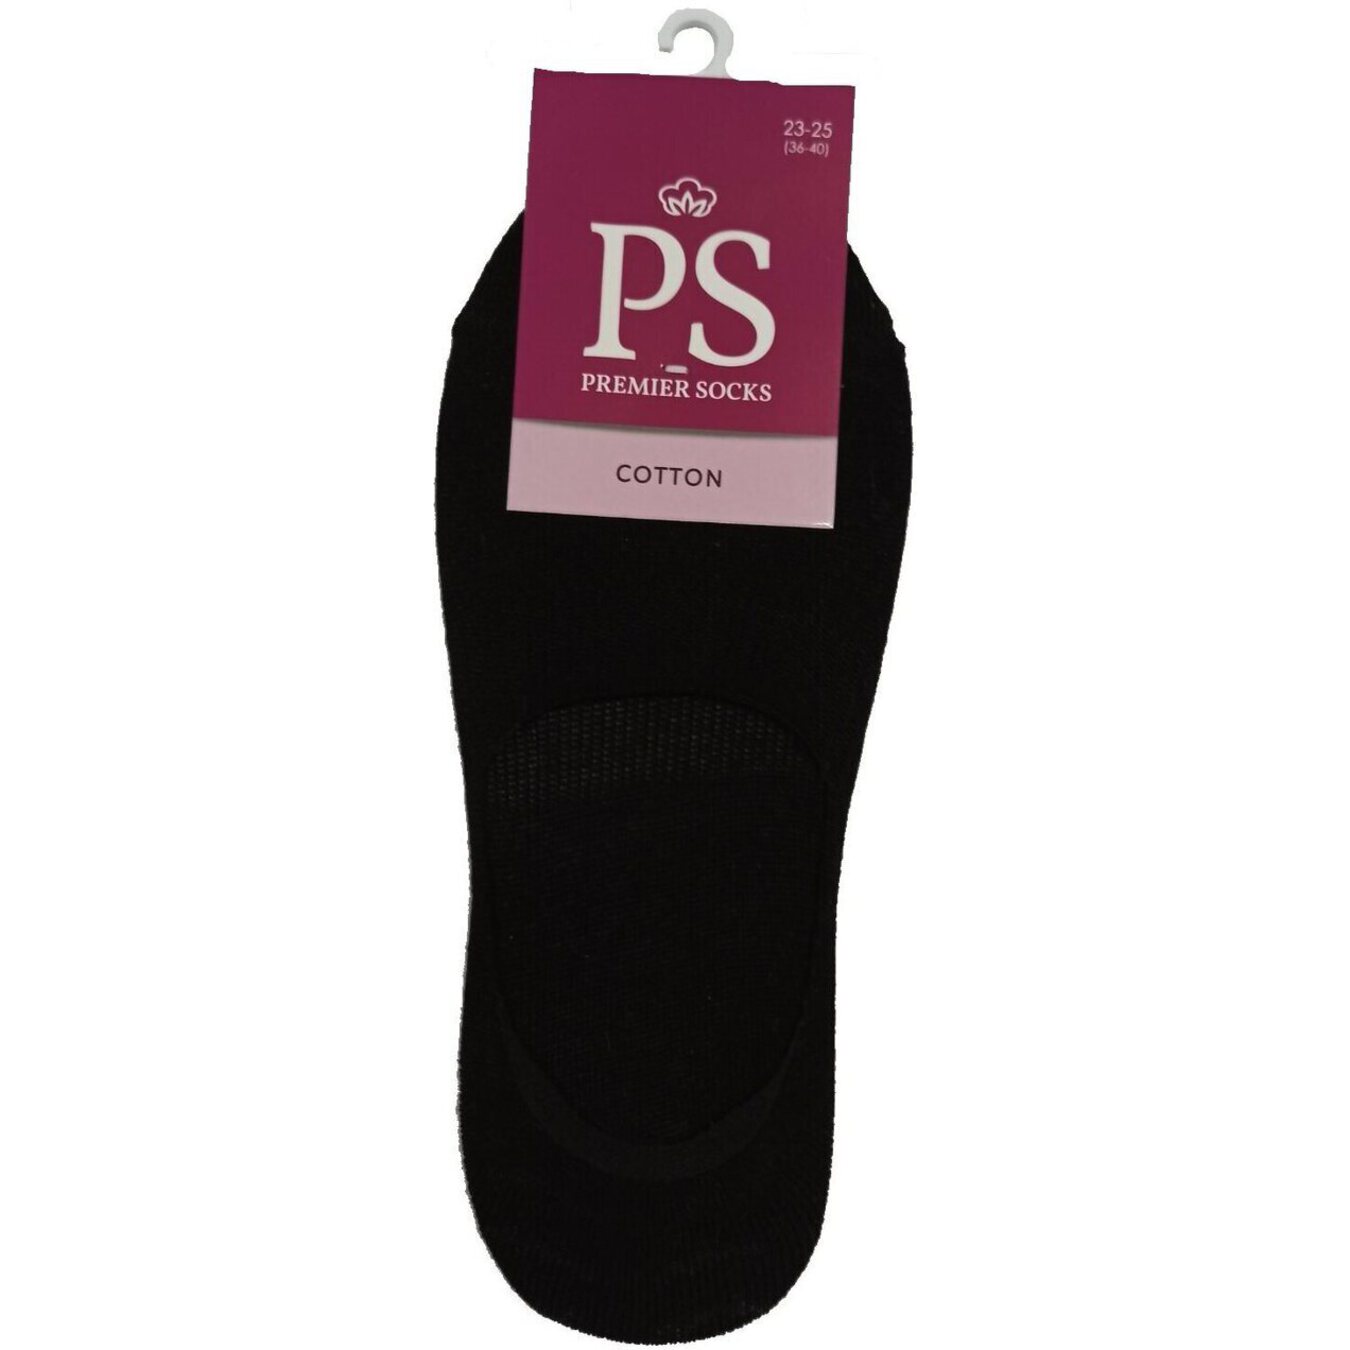 Premier Socks women's heels black 23-25p